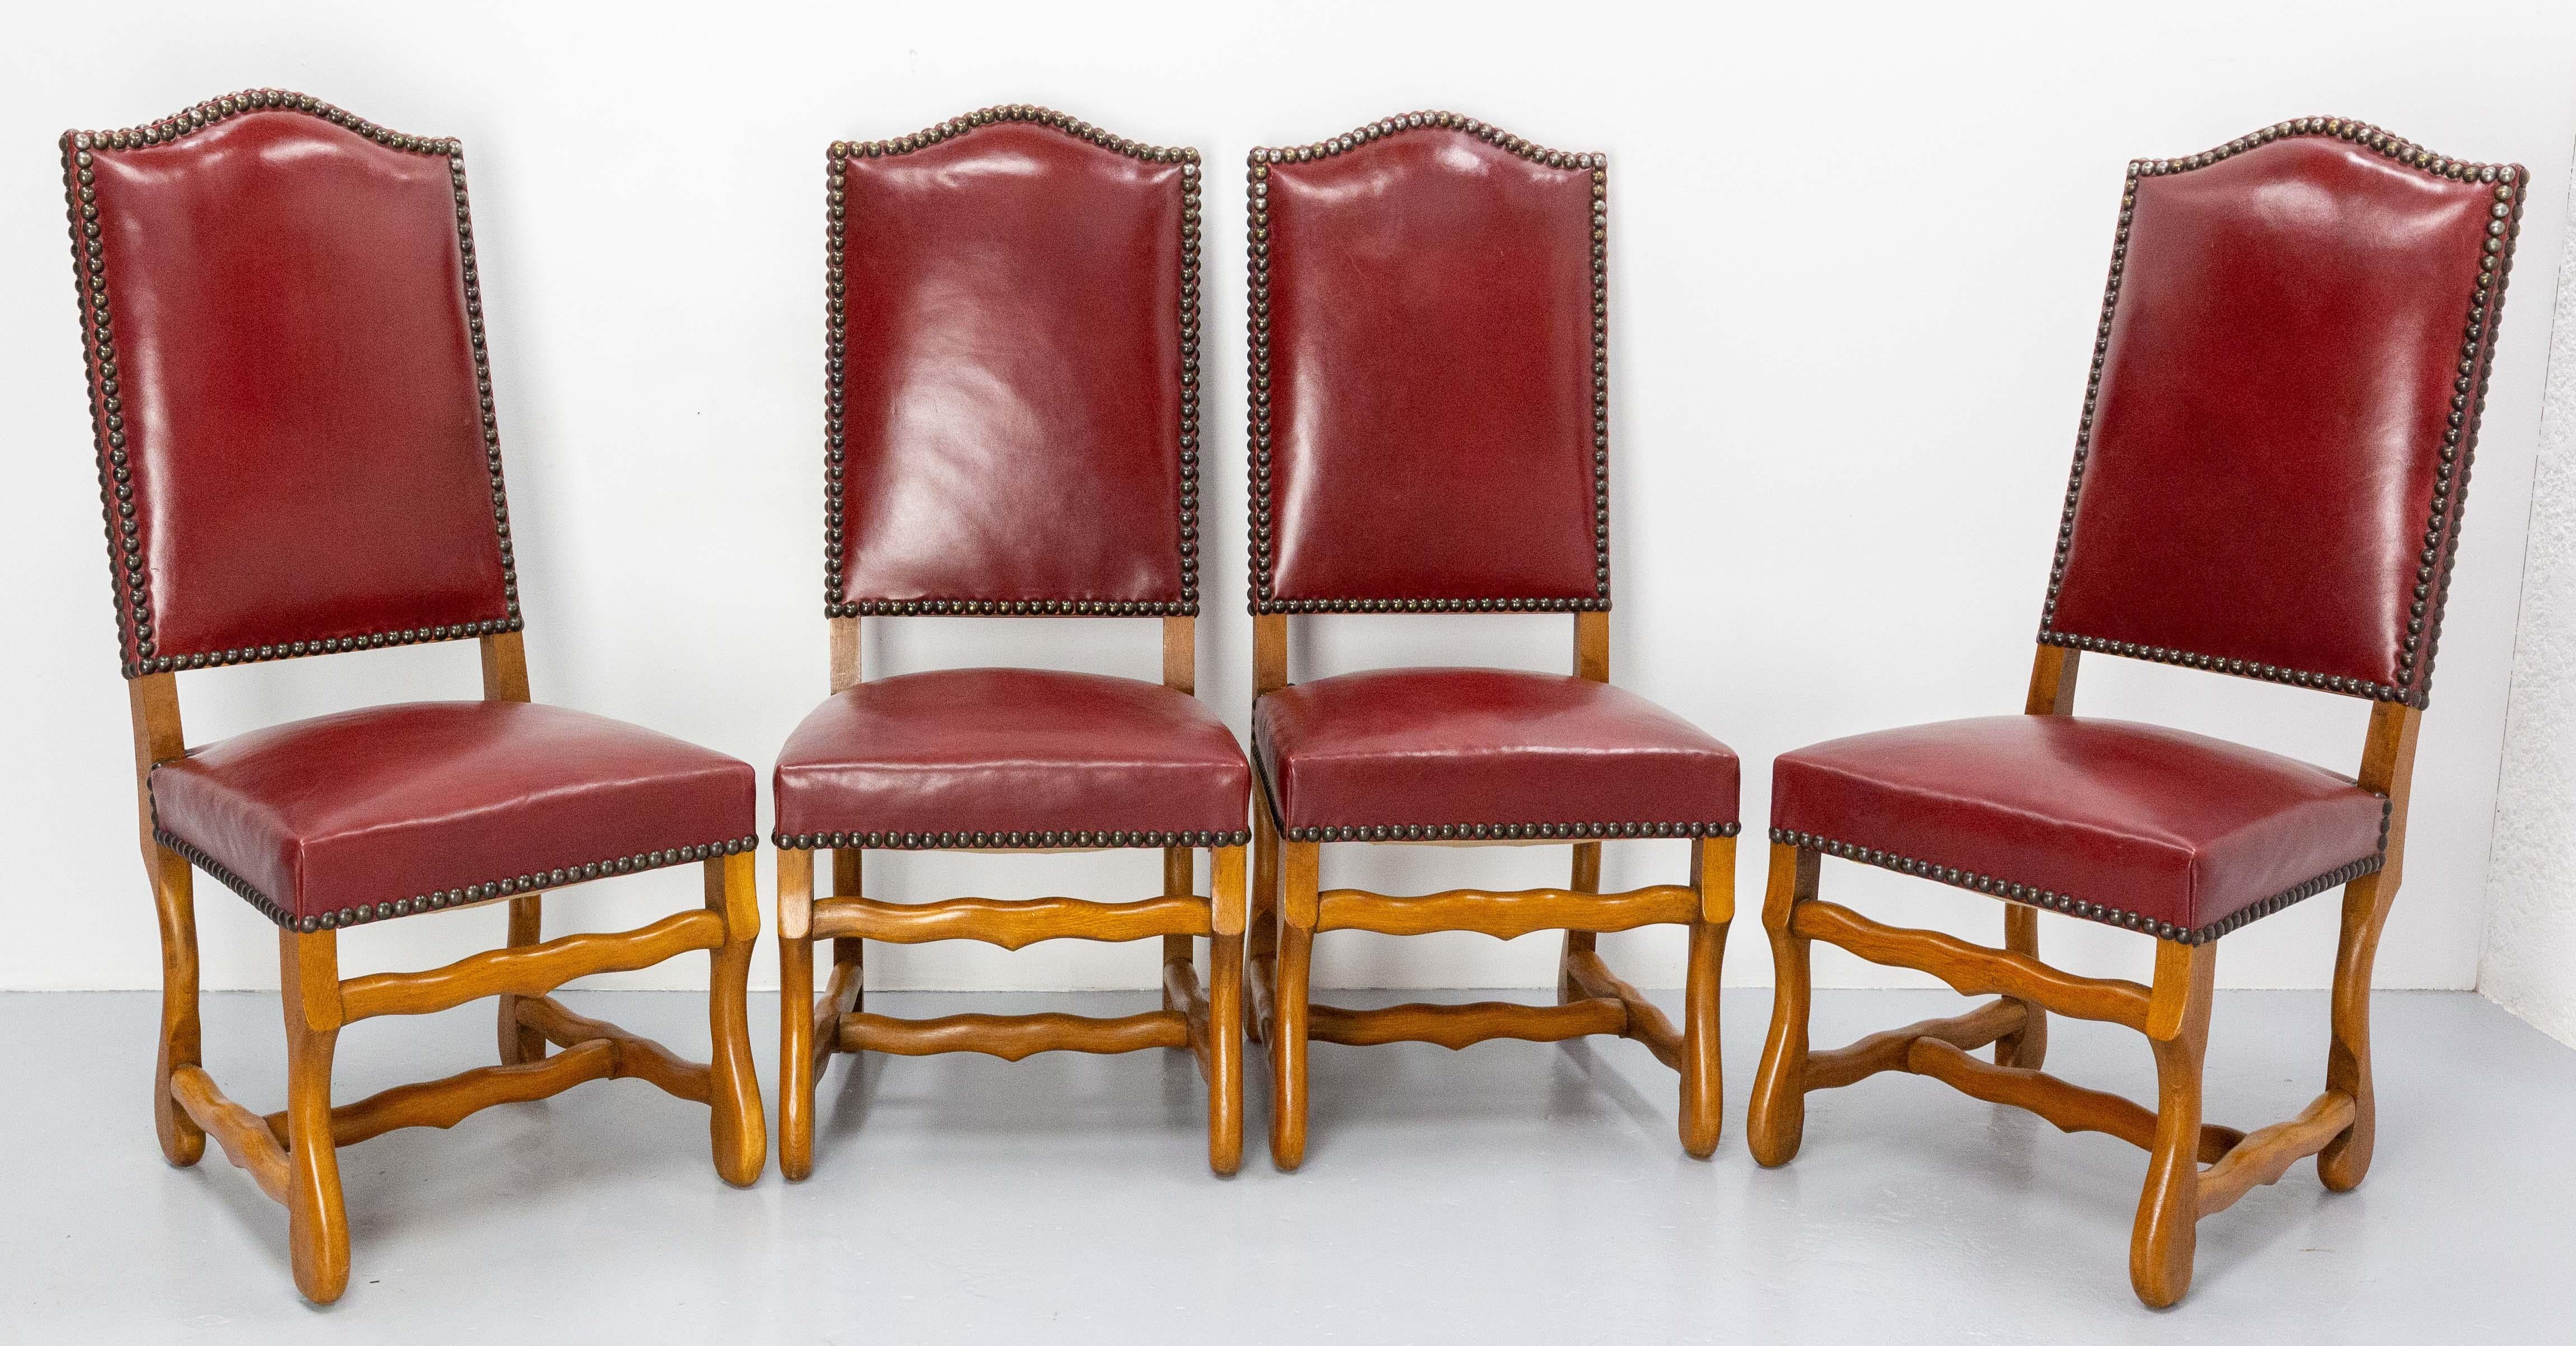 Vier Esszimmerstühle im Stil Louis XIII aus der Zeit um 1960.
Rotes Leder und Nieten, Eiche.
Einige Gebrauchsspuren, die Stühle wurden wenig benutzt.
Zwei kleine Flecken auf der Rückenlehne eines der Stühle (siehe letztes Foto).

Versand:
1